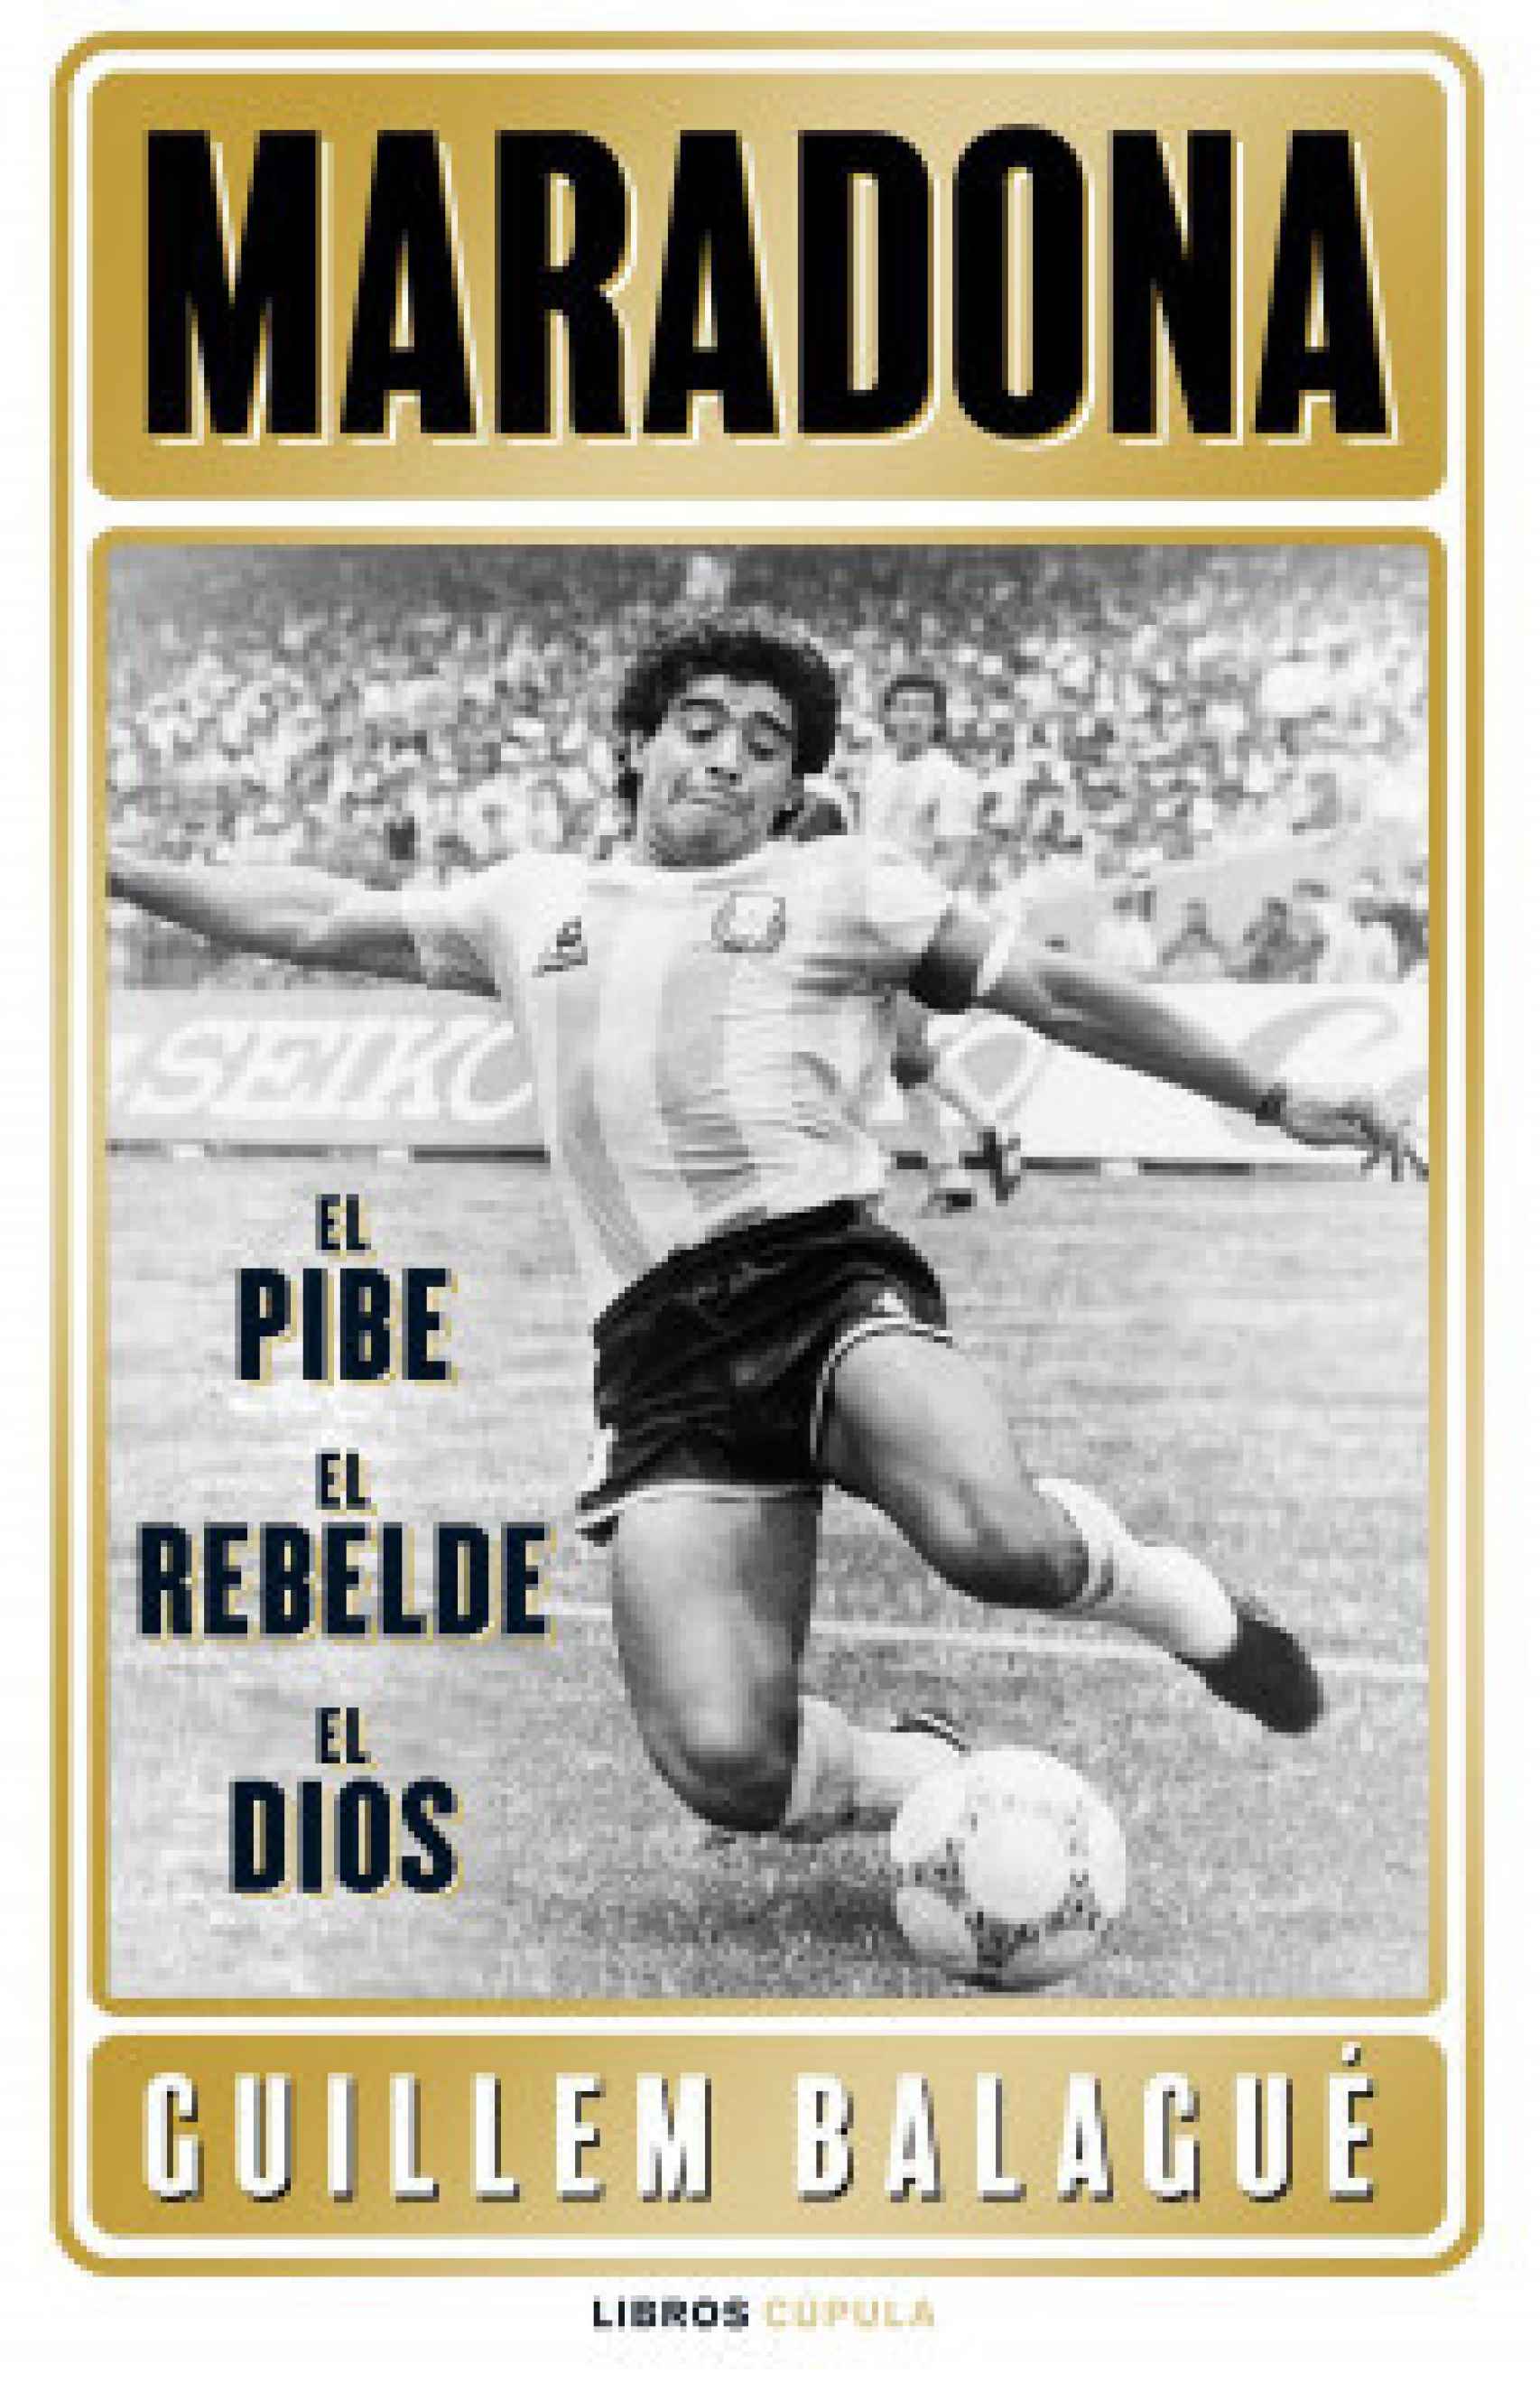 Portada del libro 'Maradona: el pibe, el héroe, el dios'